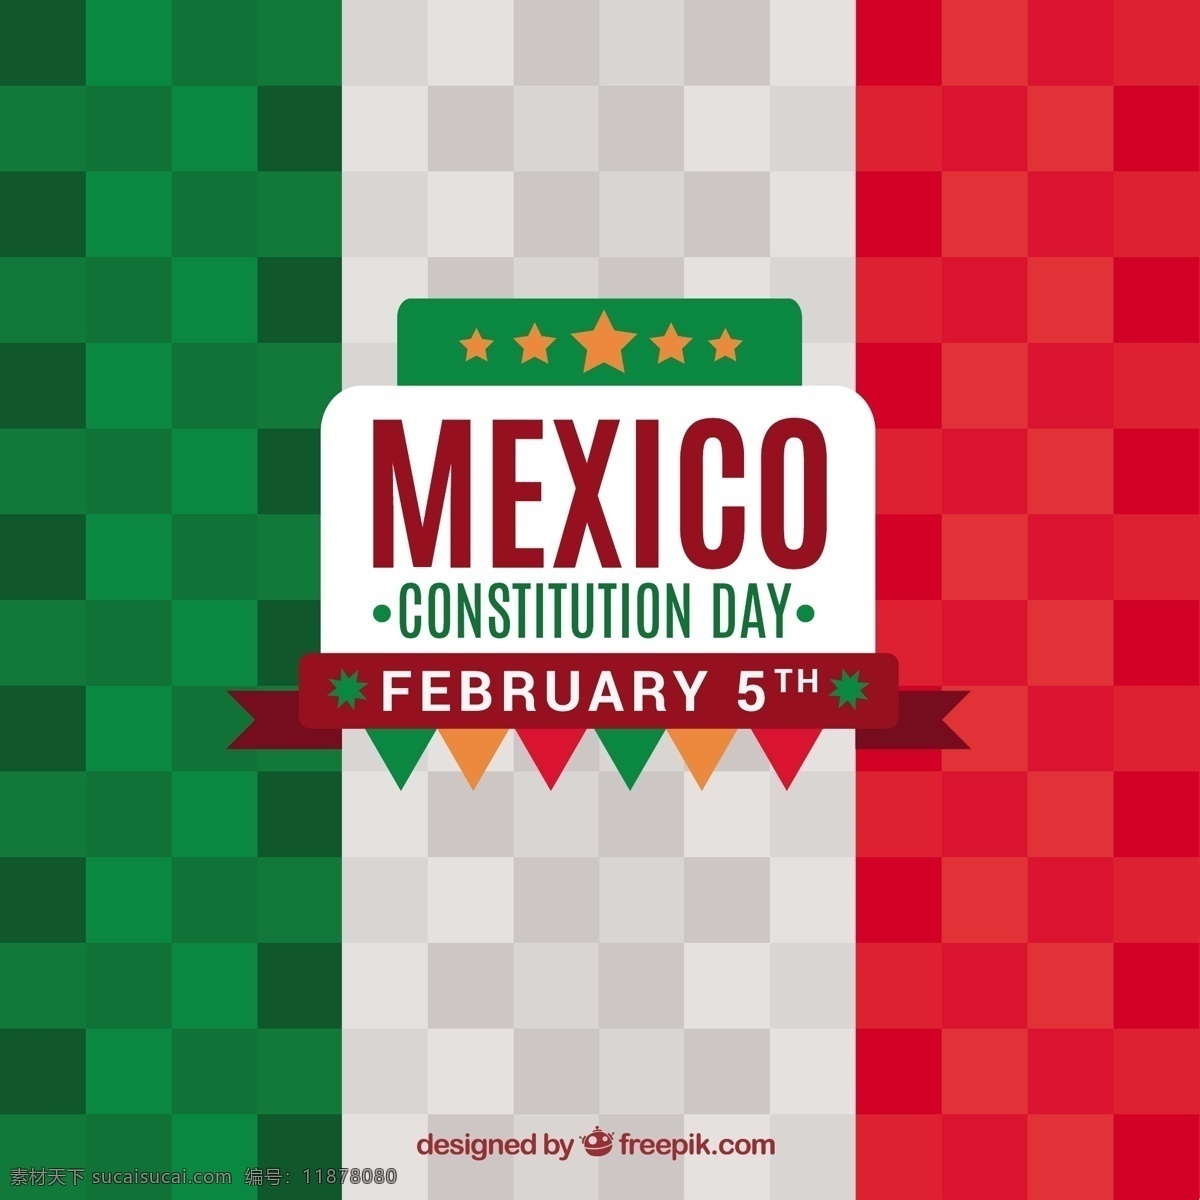 平面设计 中 墨西哥 国旗 背景 庆典 假日 公寓 自由 国家 革命 爱国 二月 民主 权利 宪法 爱国主义